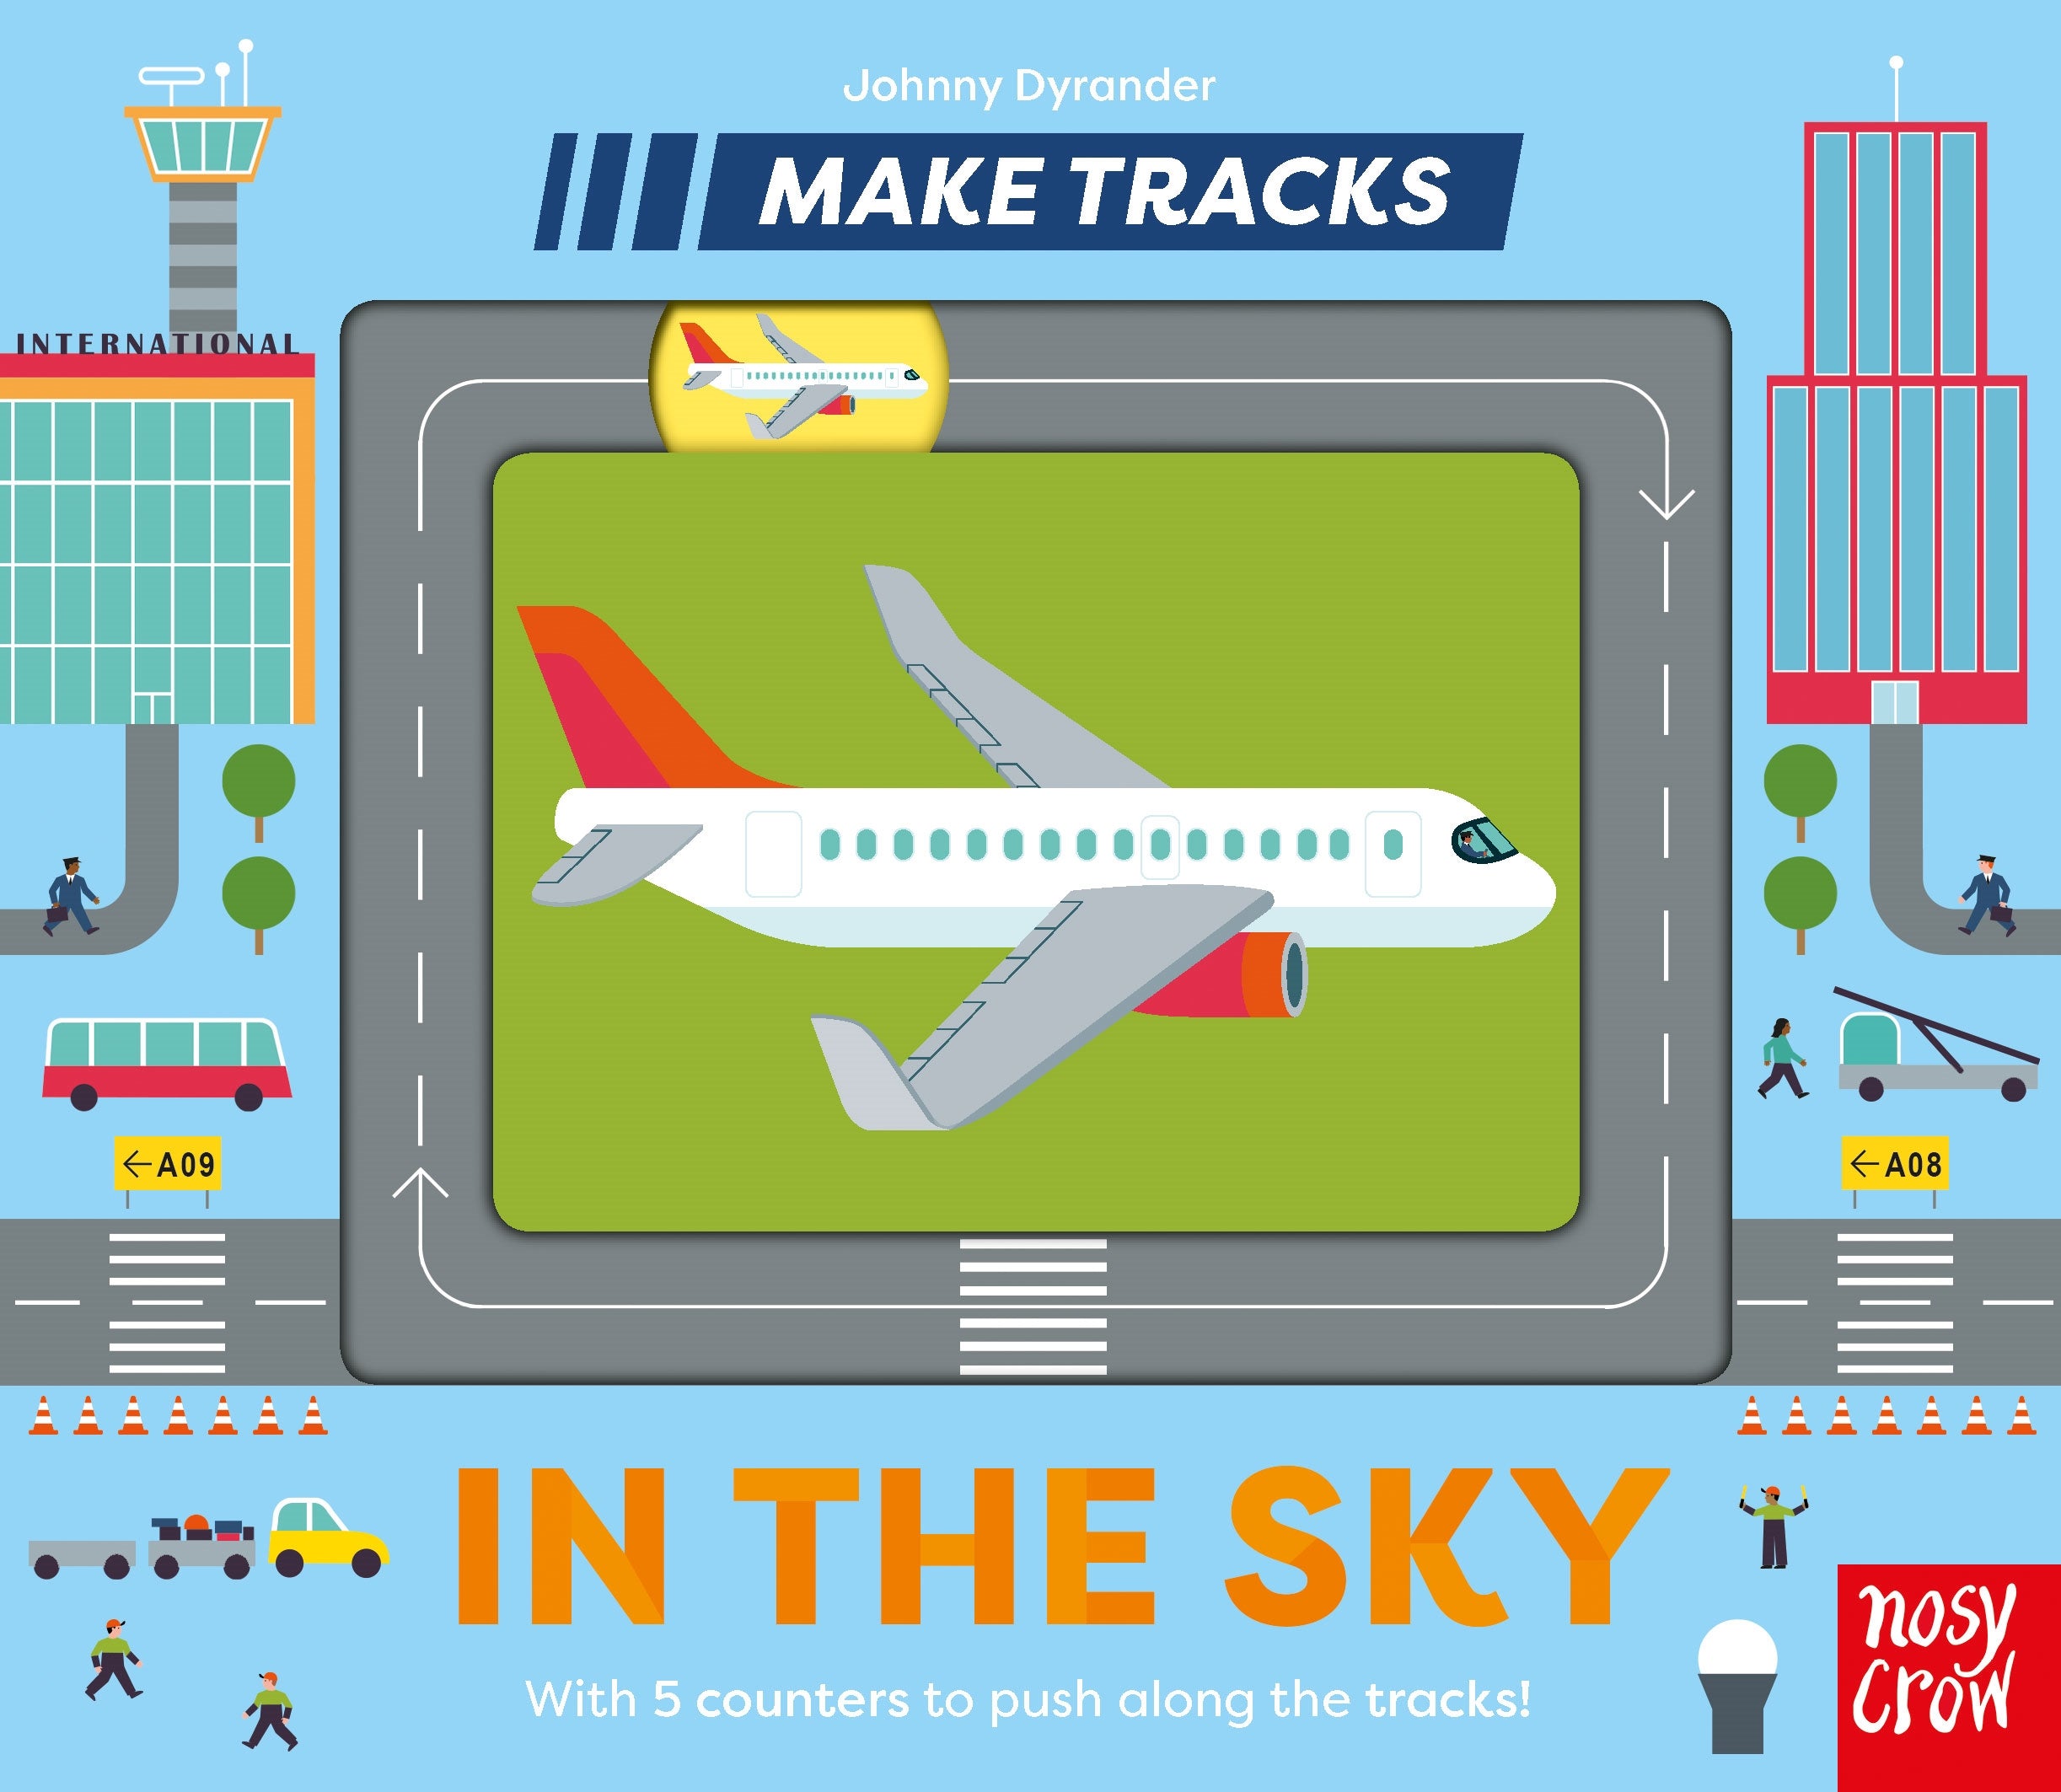 Make Tracks: In the Sky